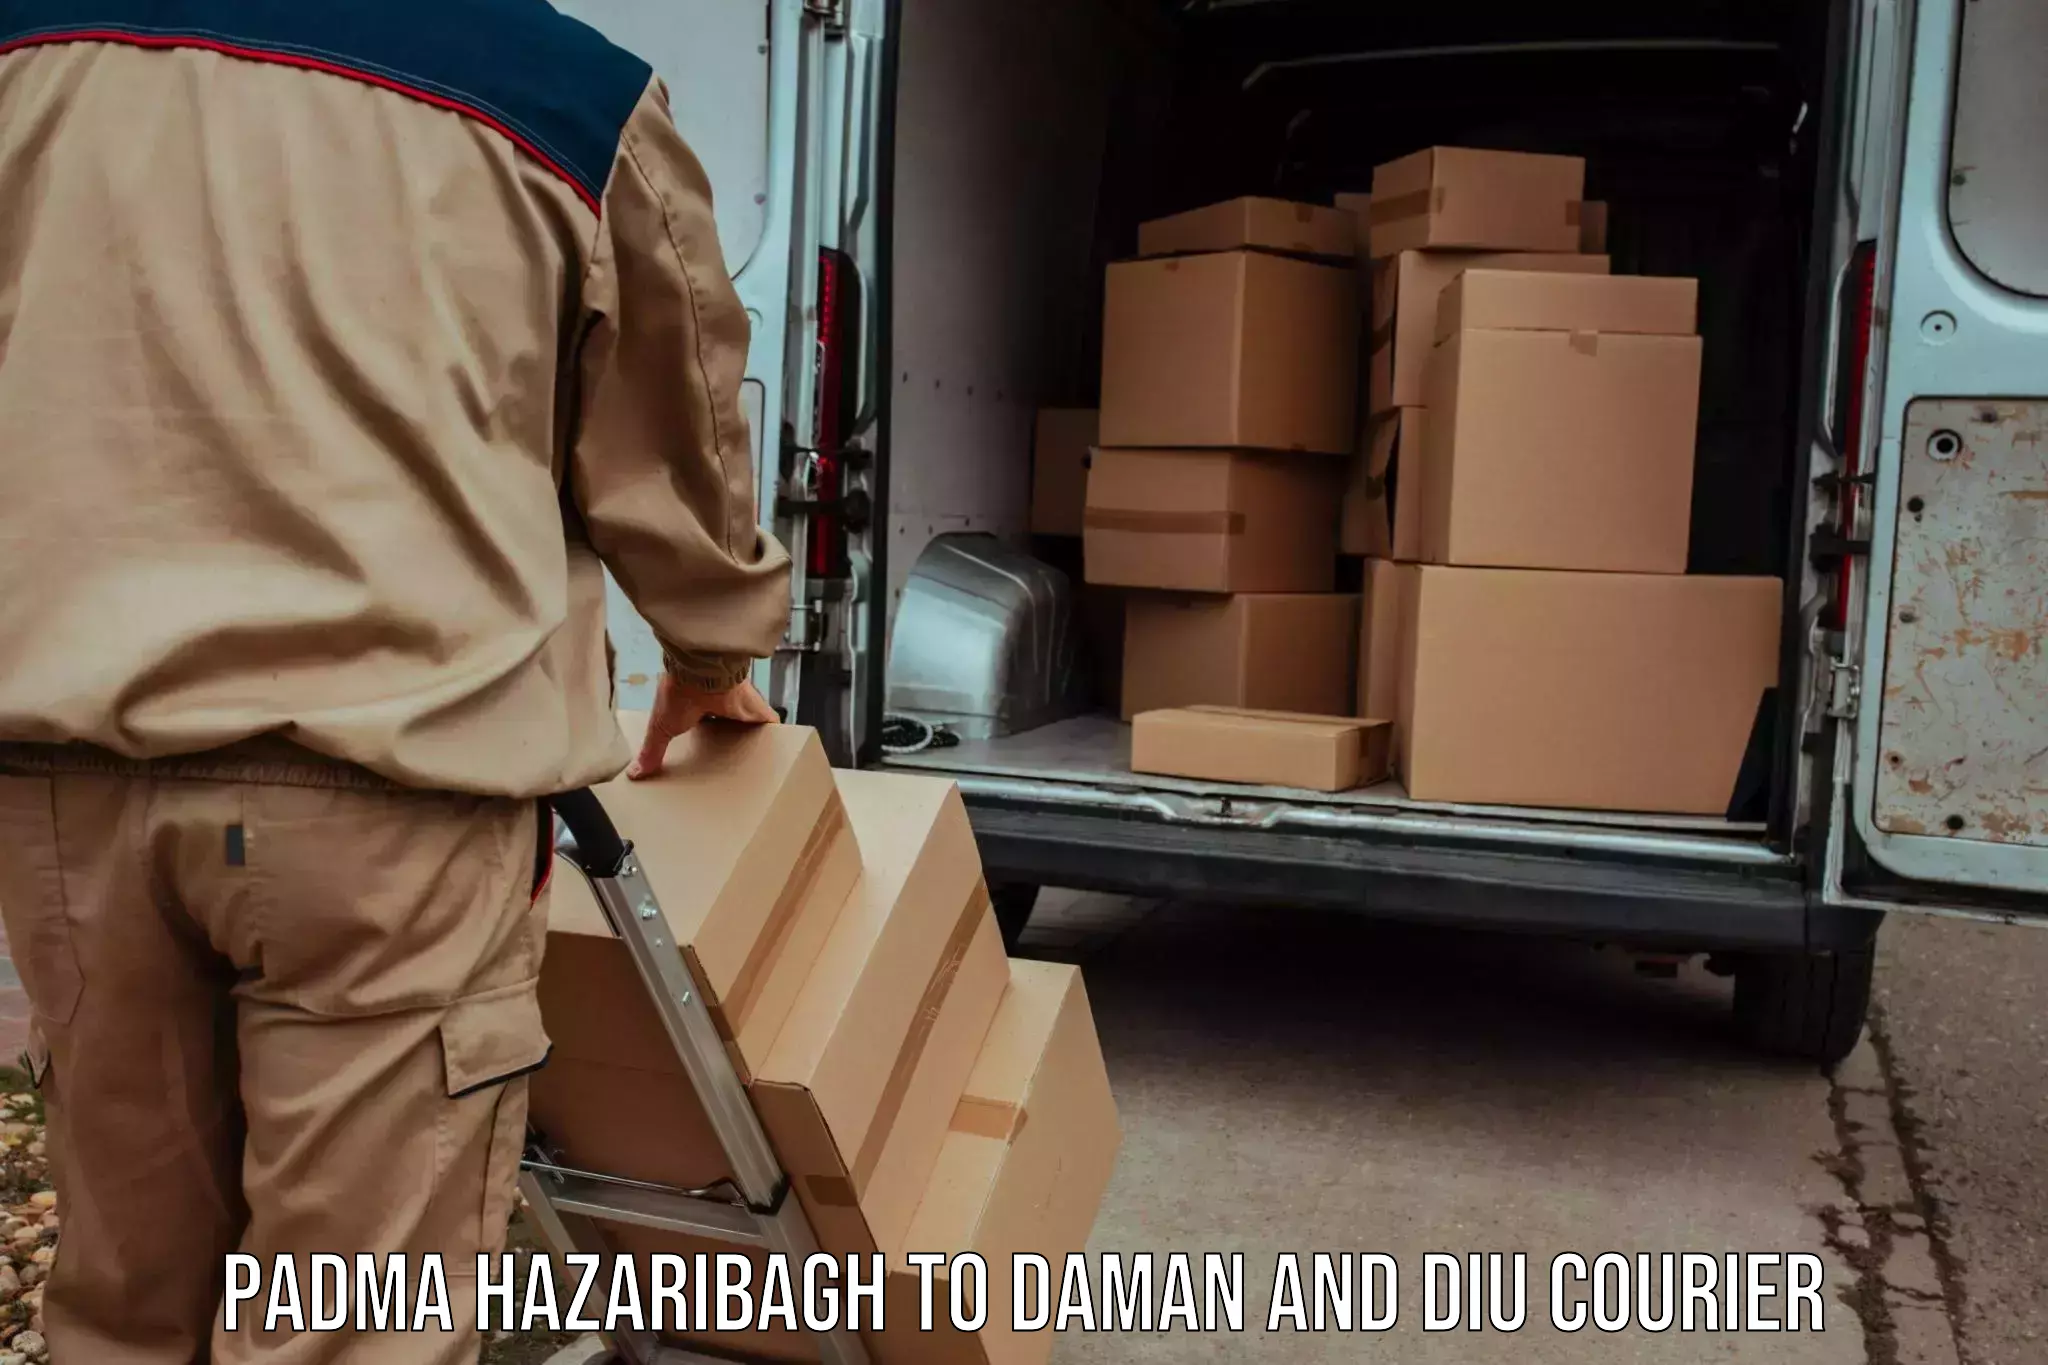 Cargo delivery service Padma Hazaribagh to Daman